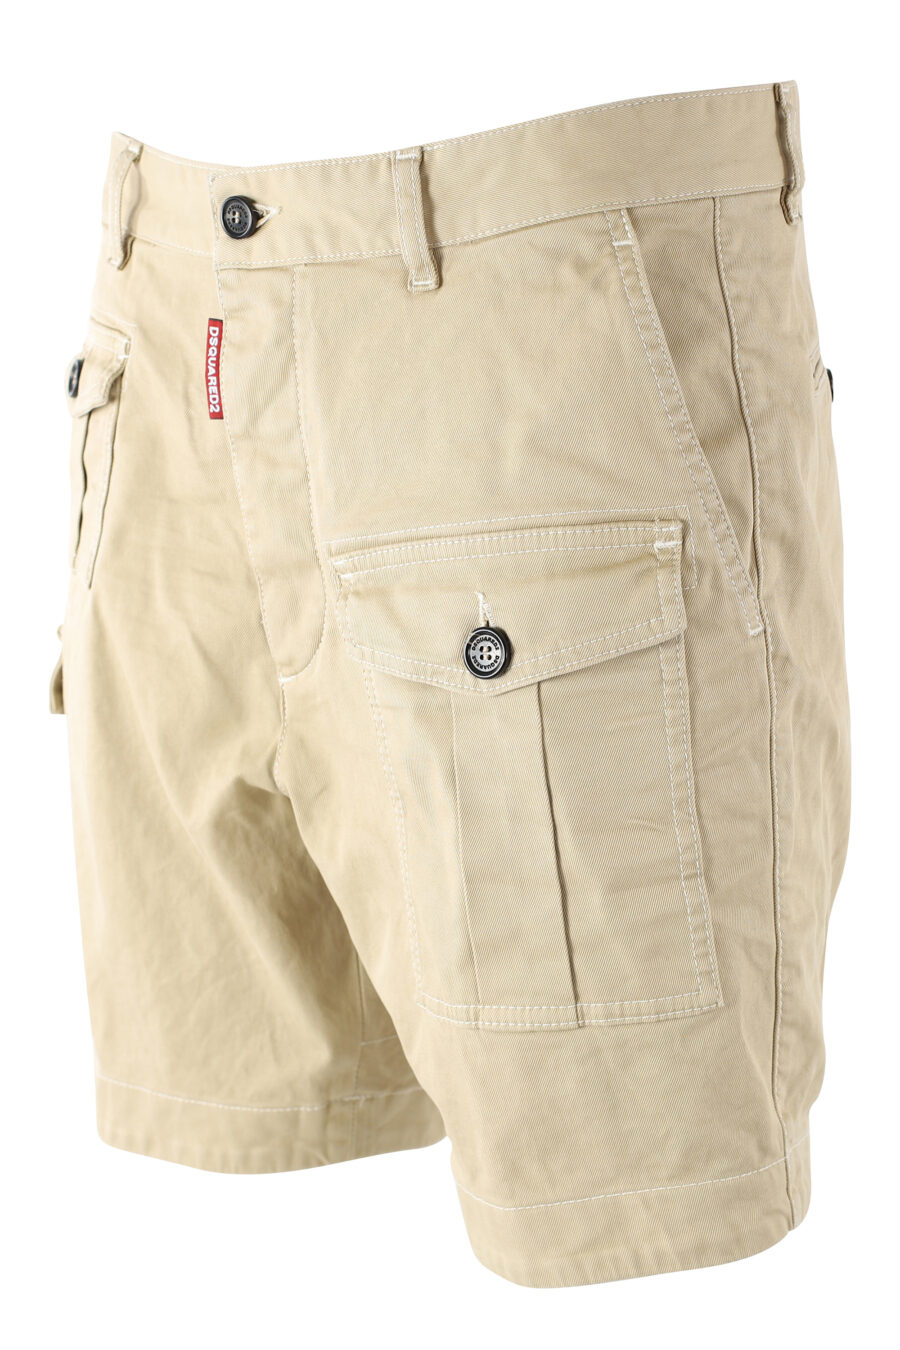 Pantalón corto beige "sexy cargo shorts" - IMG 9709